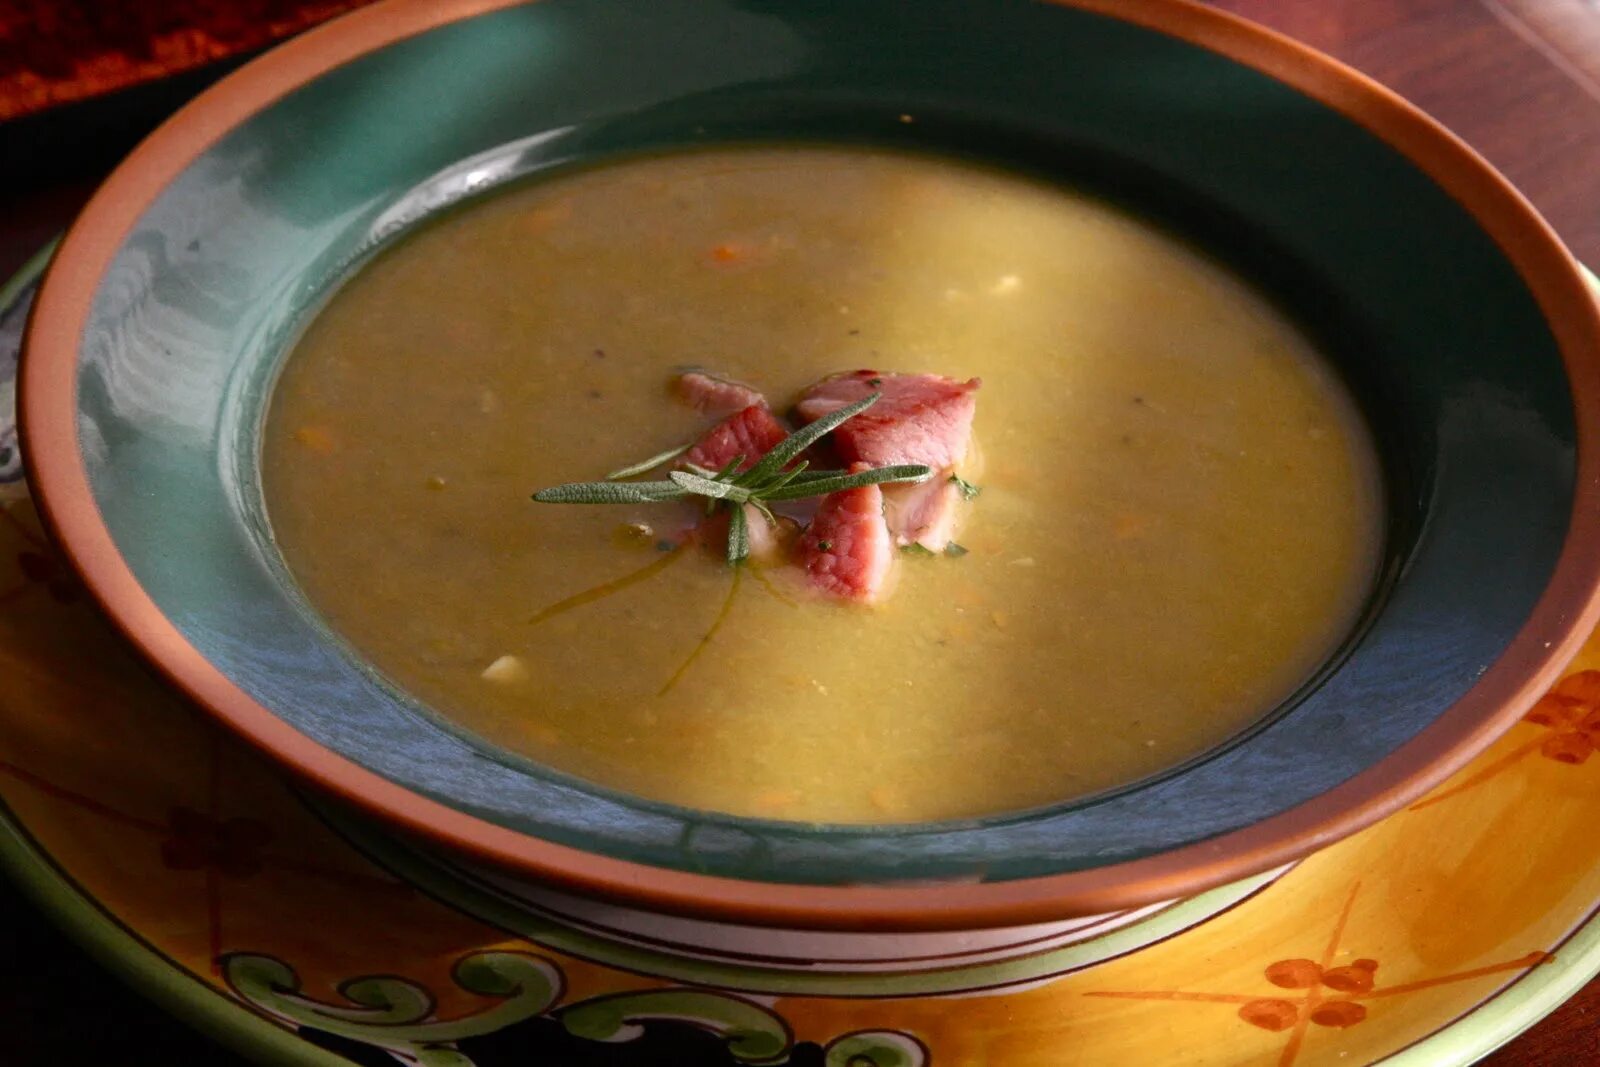 Soup get. Красивый суп. Красивый суп в кастрюле. В чем носить суп на работу. Чхеонггукджанг суп из чего состоит.